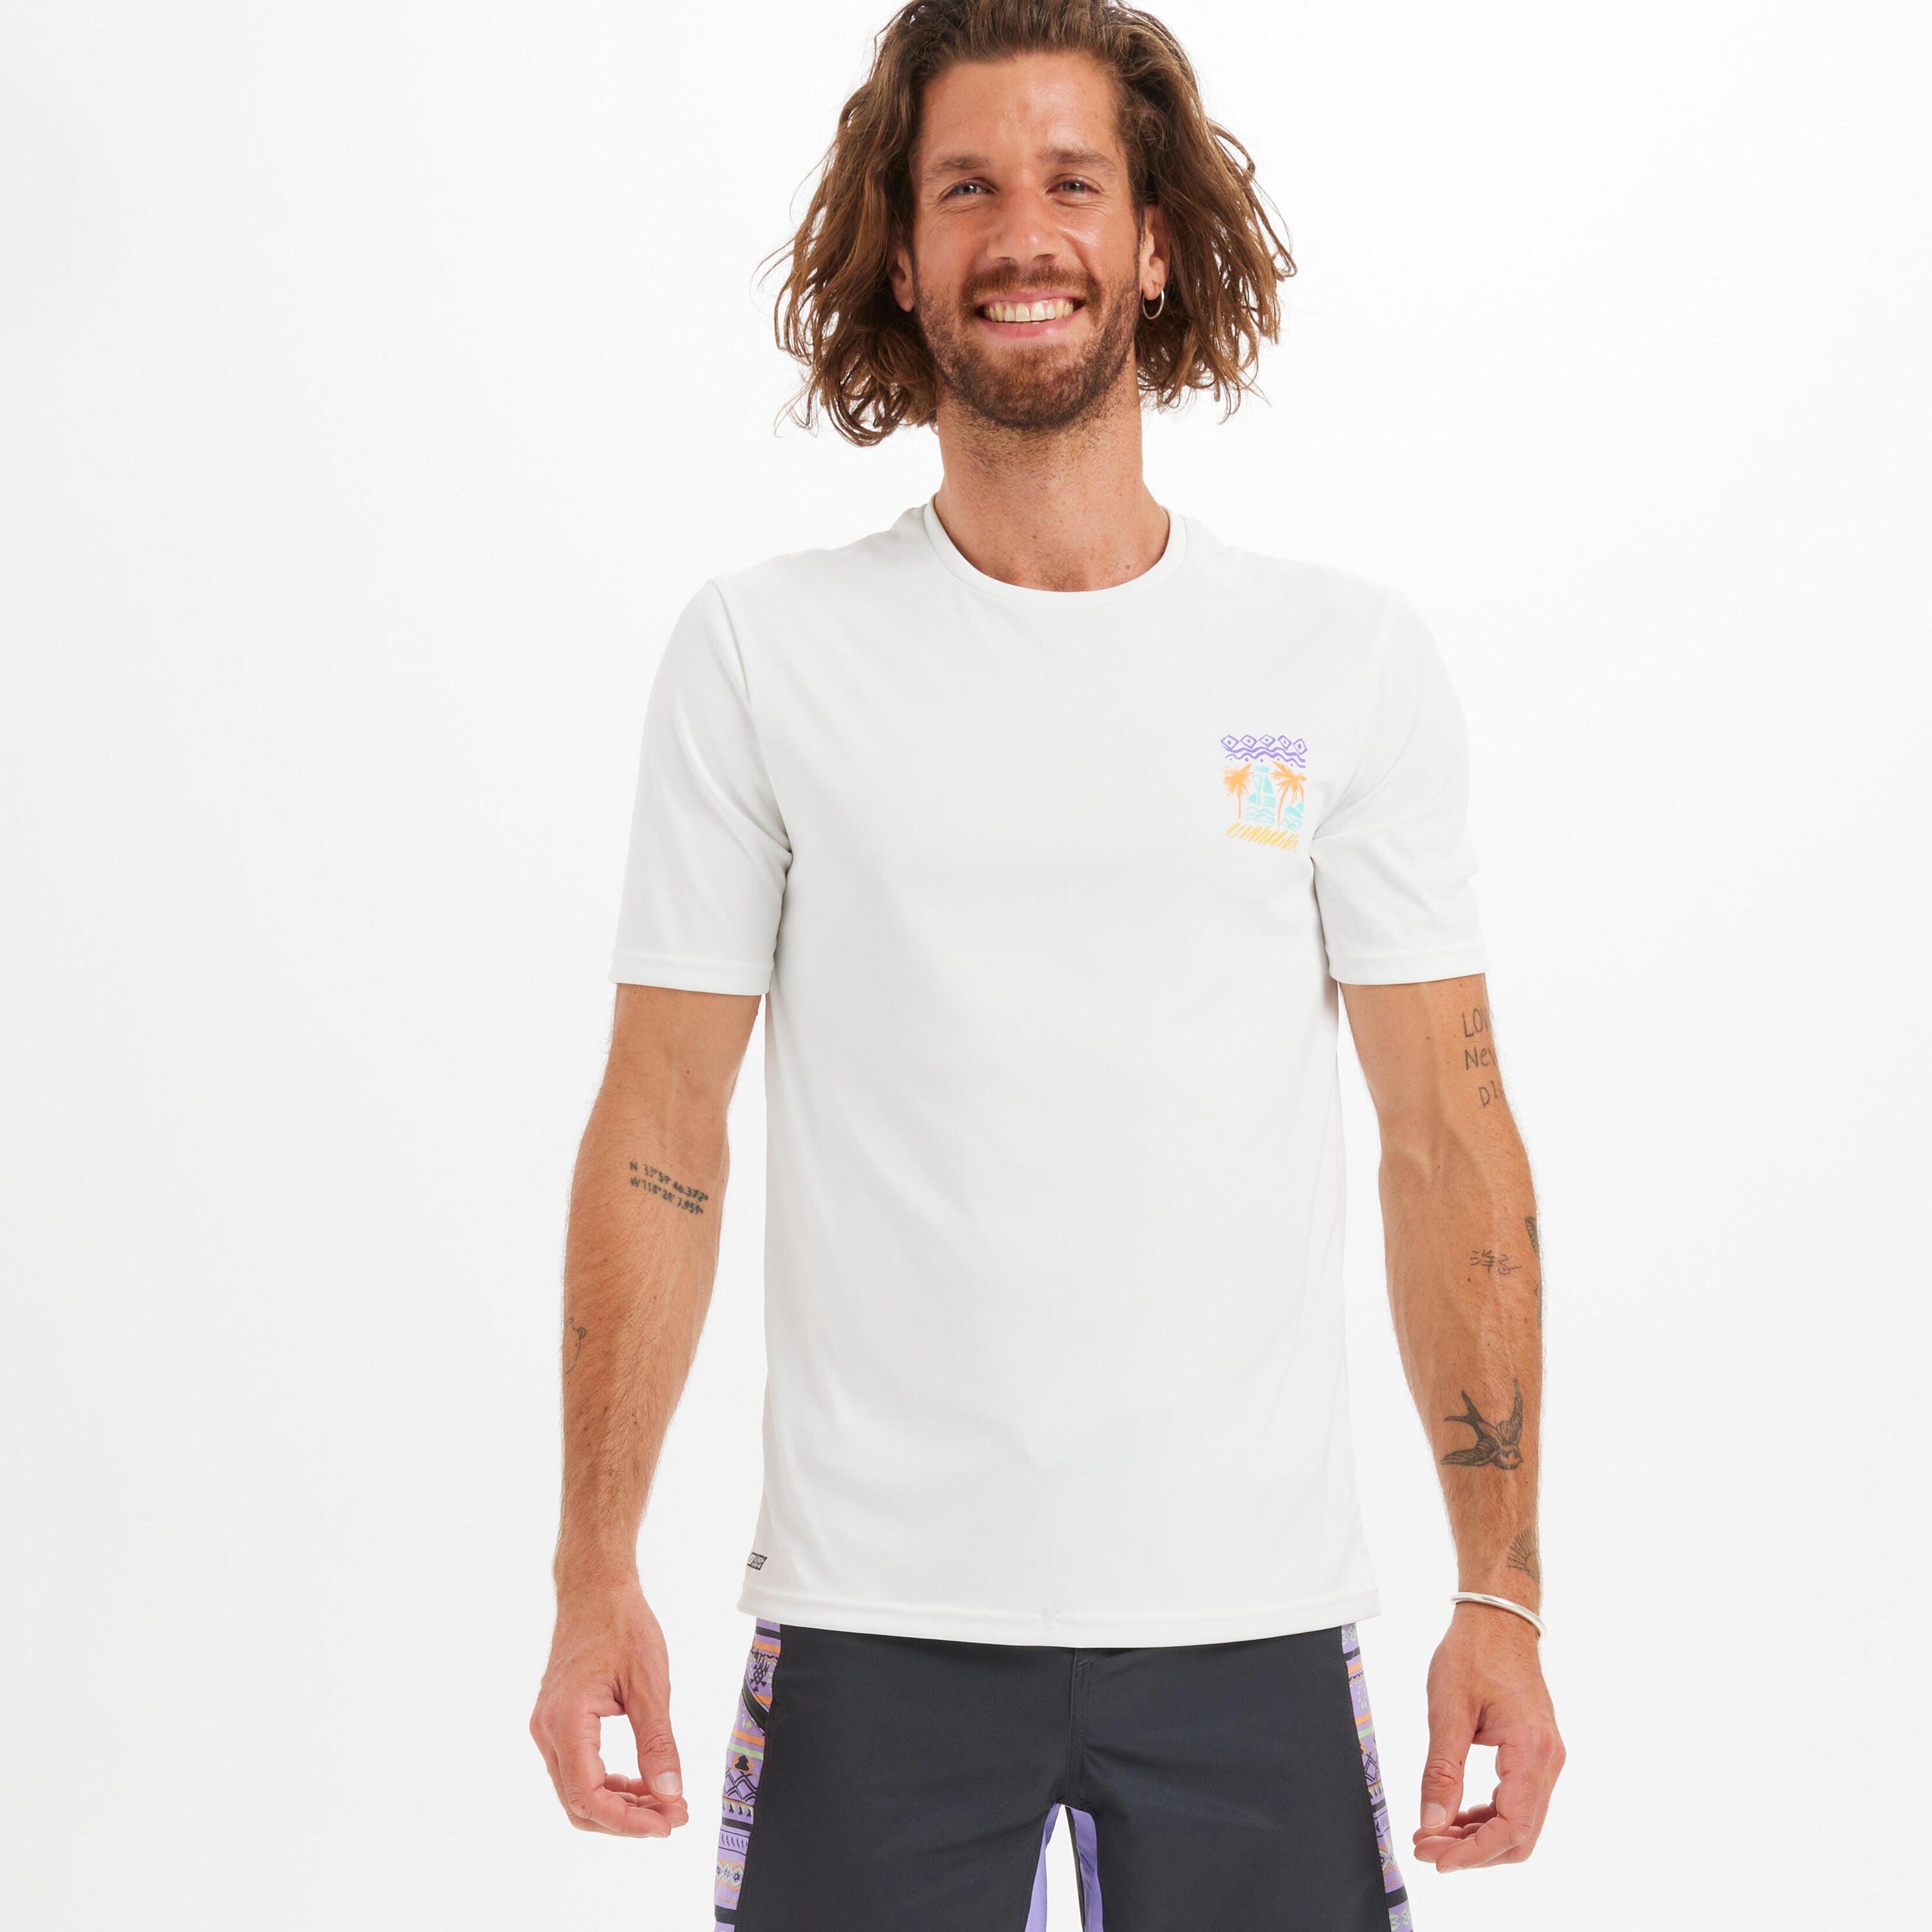 OLAIAN Men's Surfing Short-Sleeved Anti-UV T-Shirt - Palm white